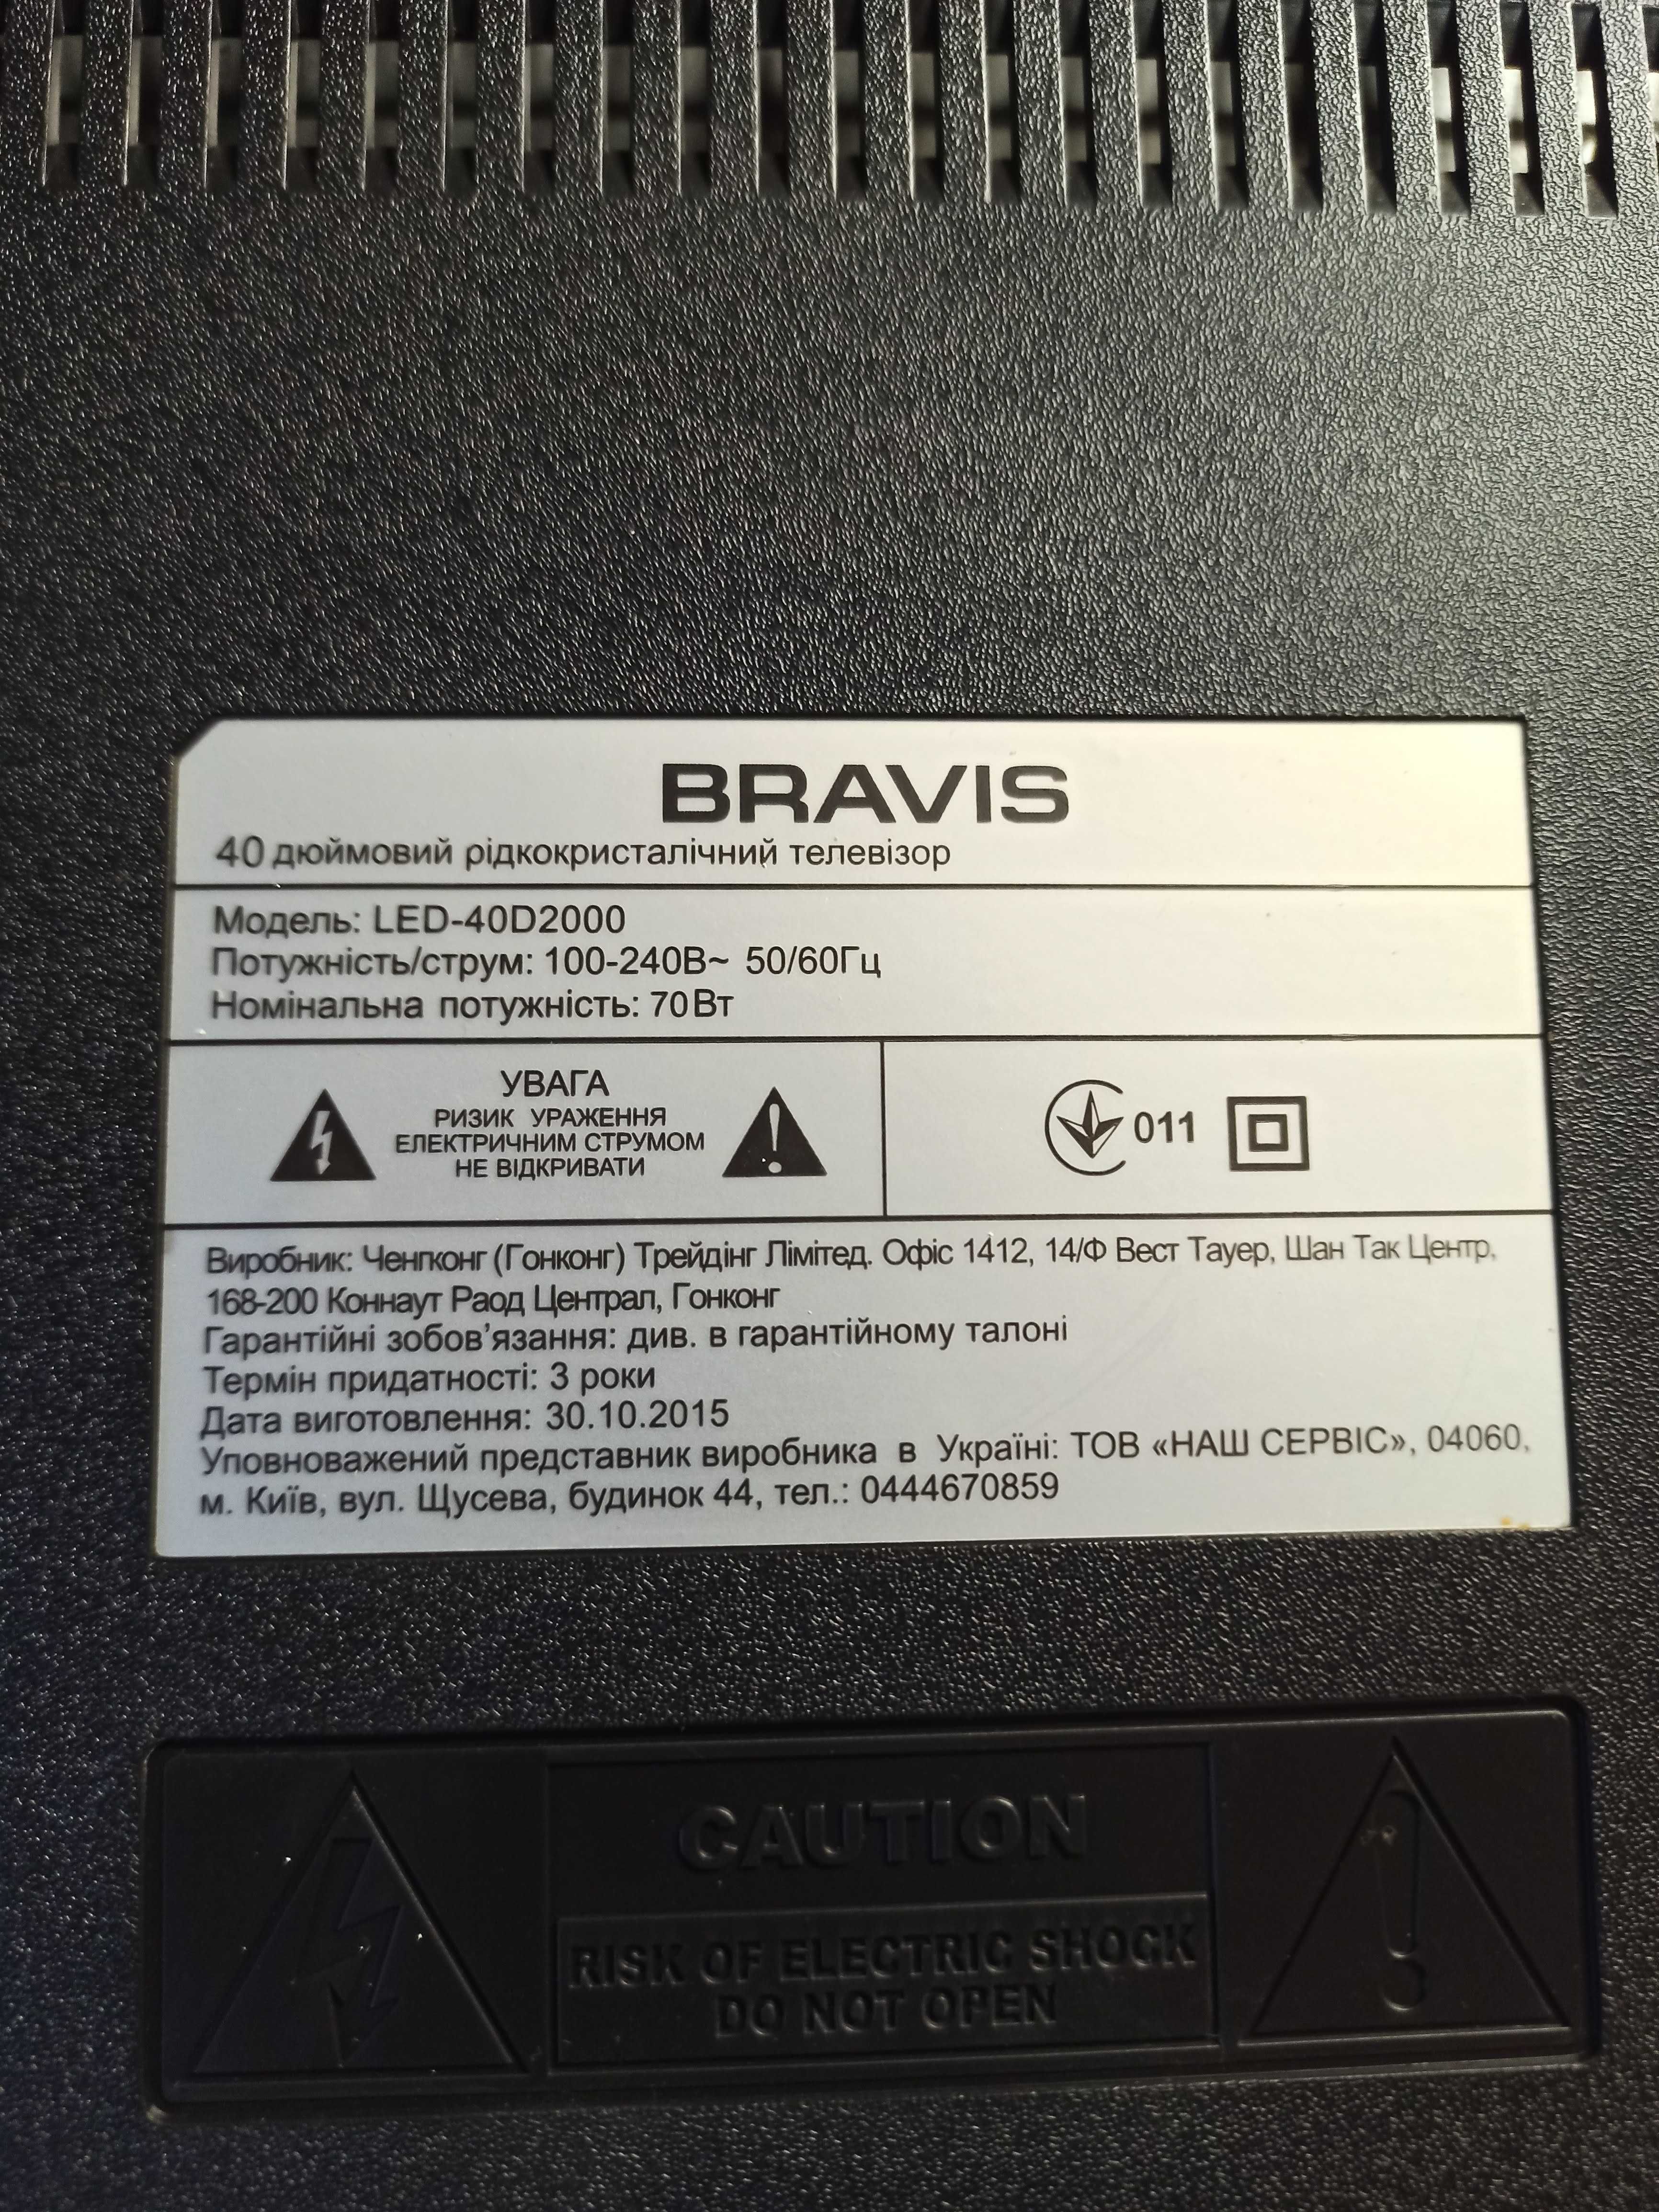 Телевизор BRAVIS LED-40D2000 с разбитой матрицей.